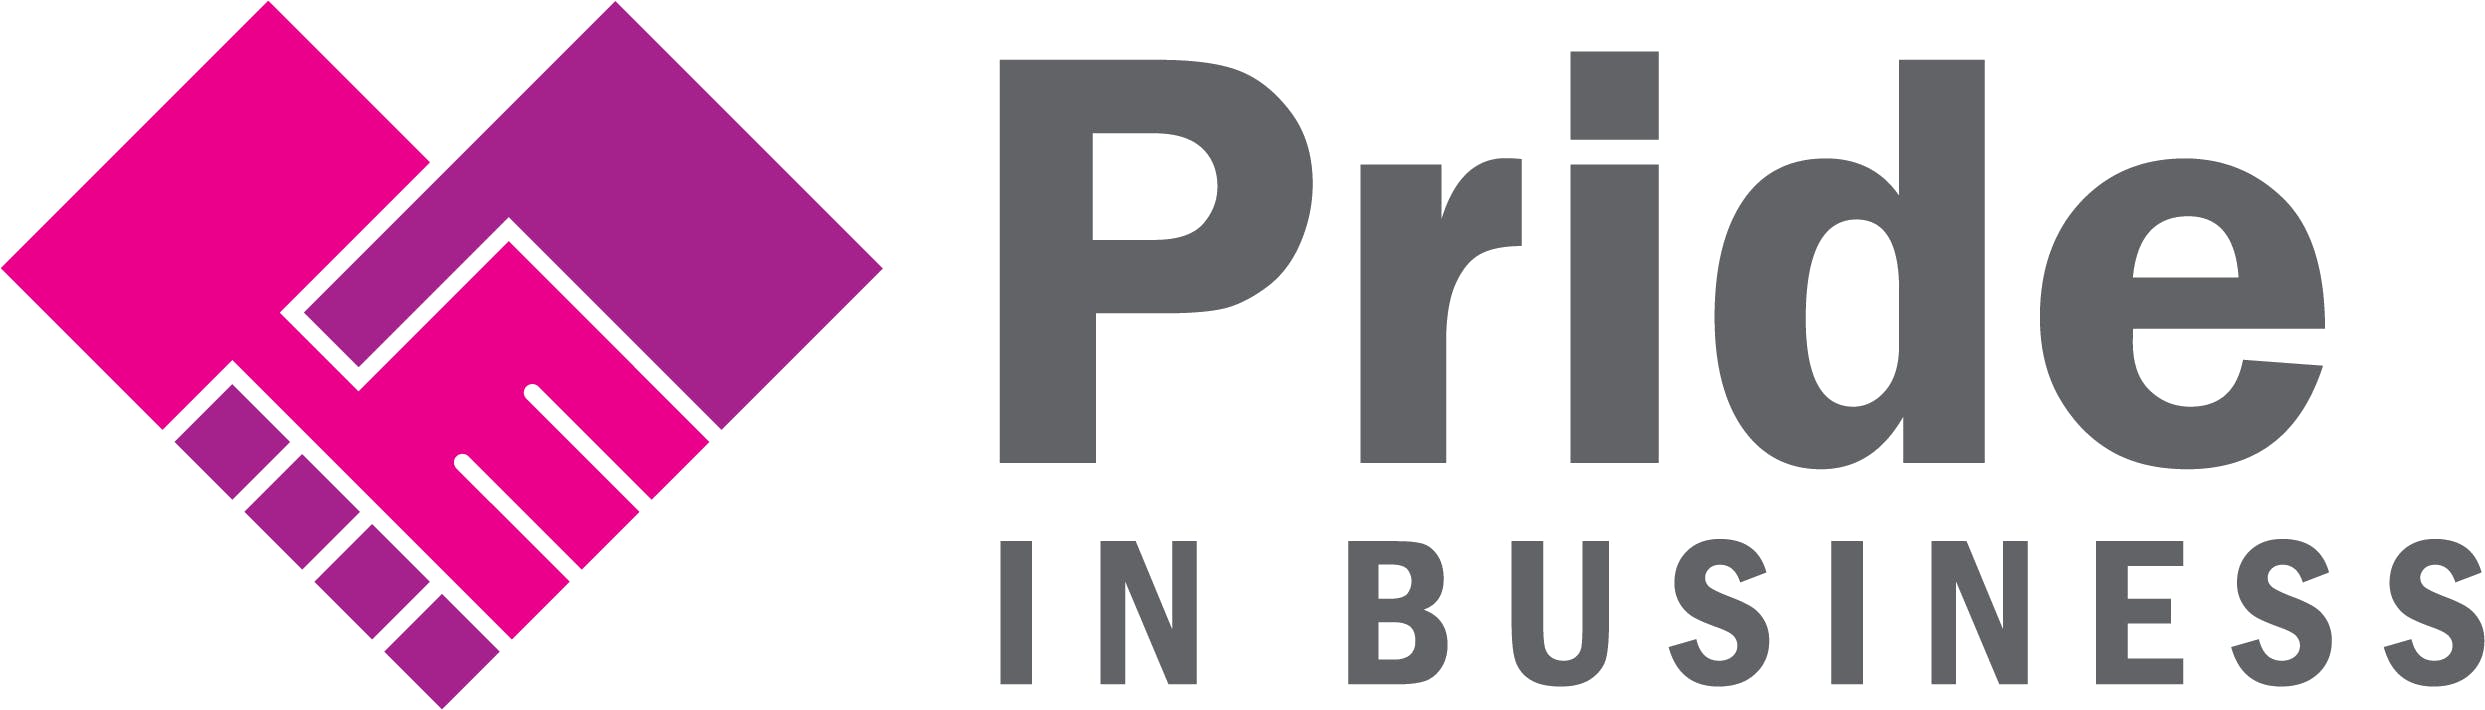 Pride in business logo